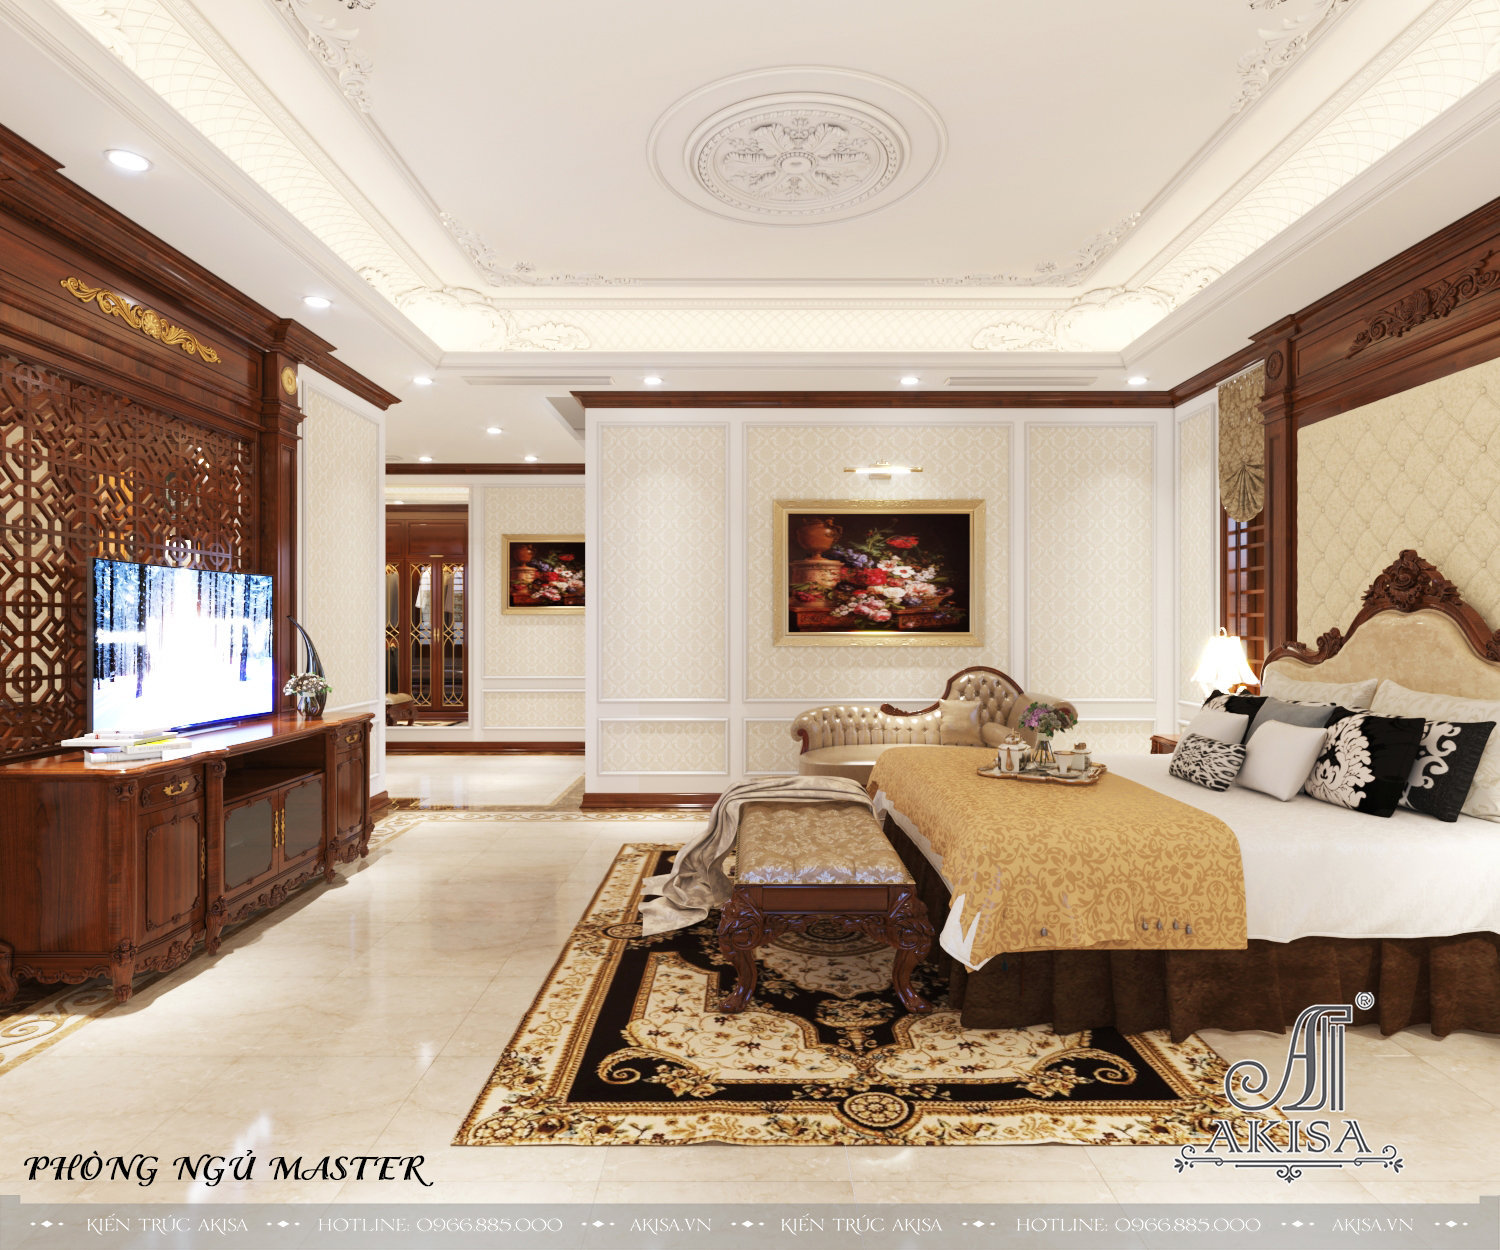 Tận hưởng sự ấm cúng và sang trọng của không gian sống tân cổ điển với nội thất được thiết kế tinh tế, chi tiết và đầy nét nghệ thuật.